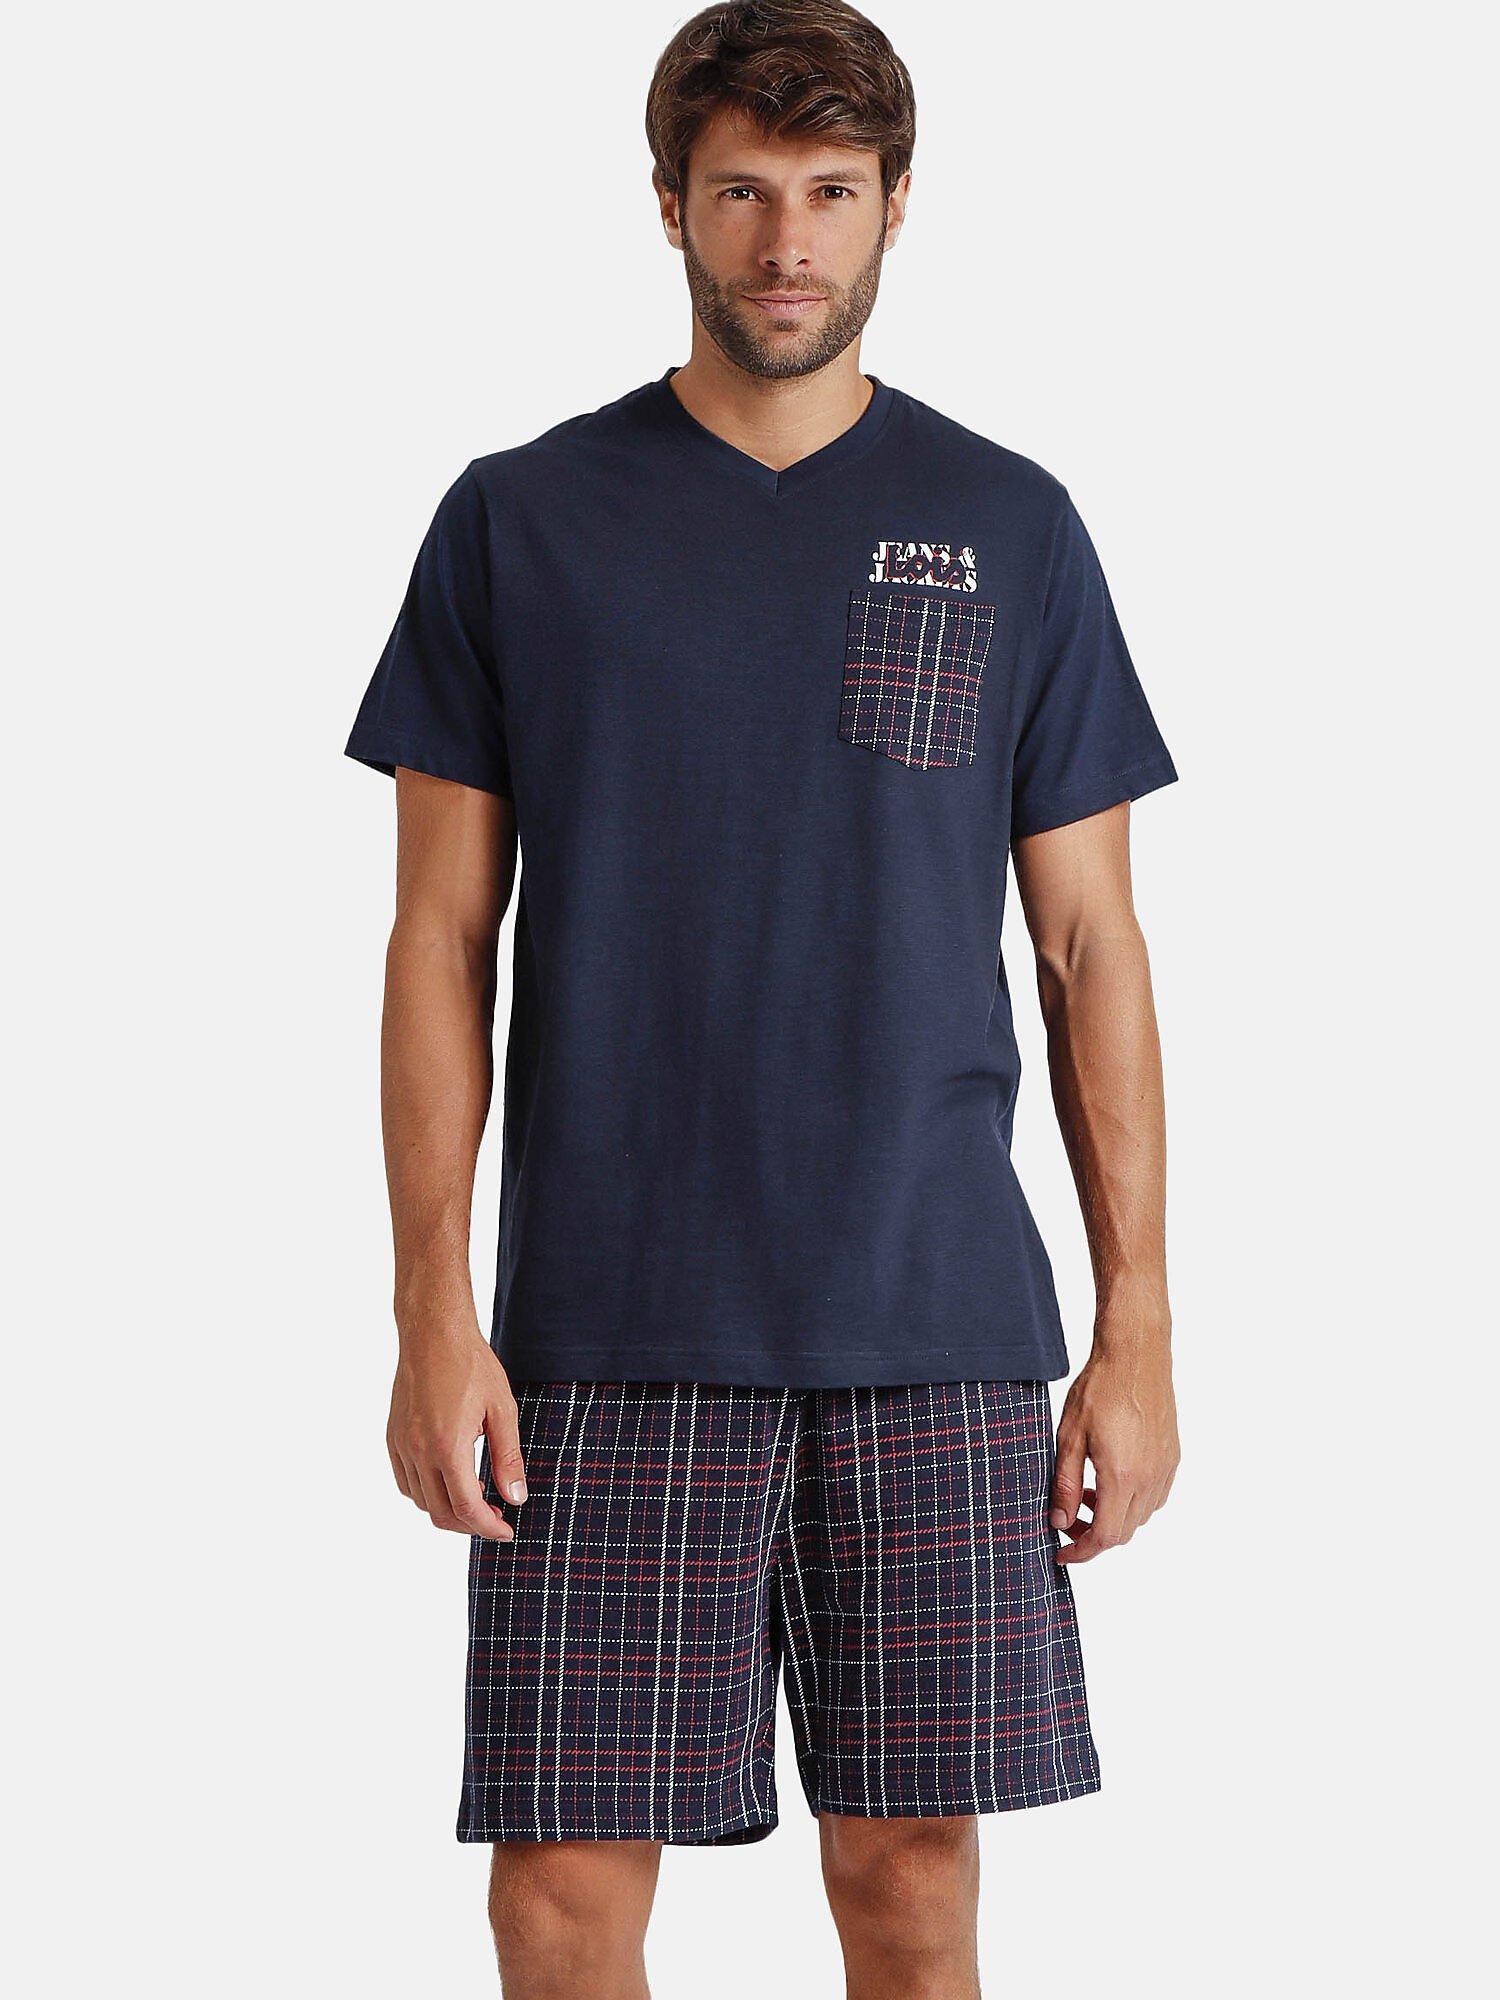 Pyjama Shorts T-shirt V-ausschnitt Jandj Lois Herren Blau XXL von Admas